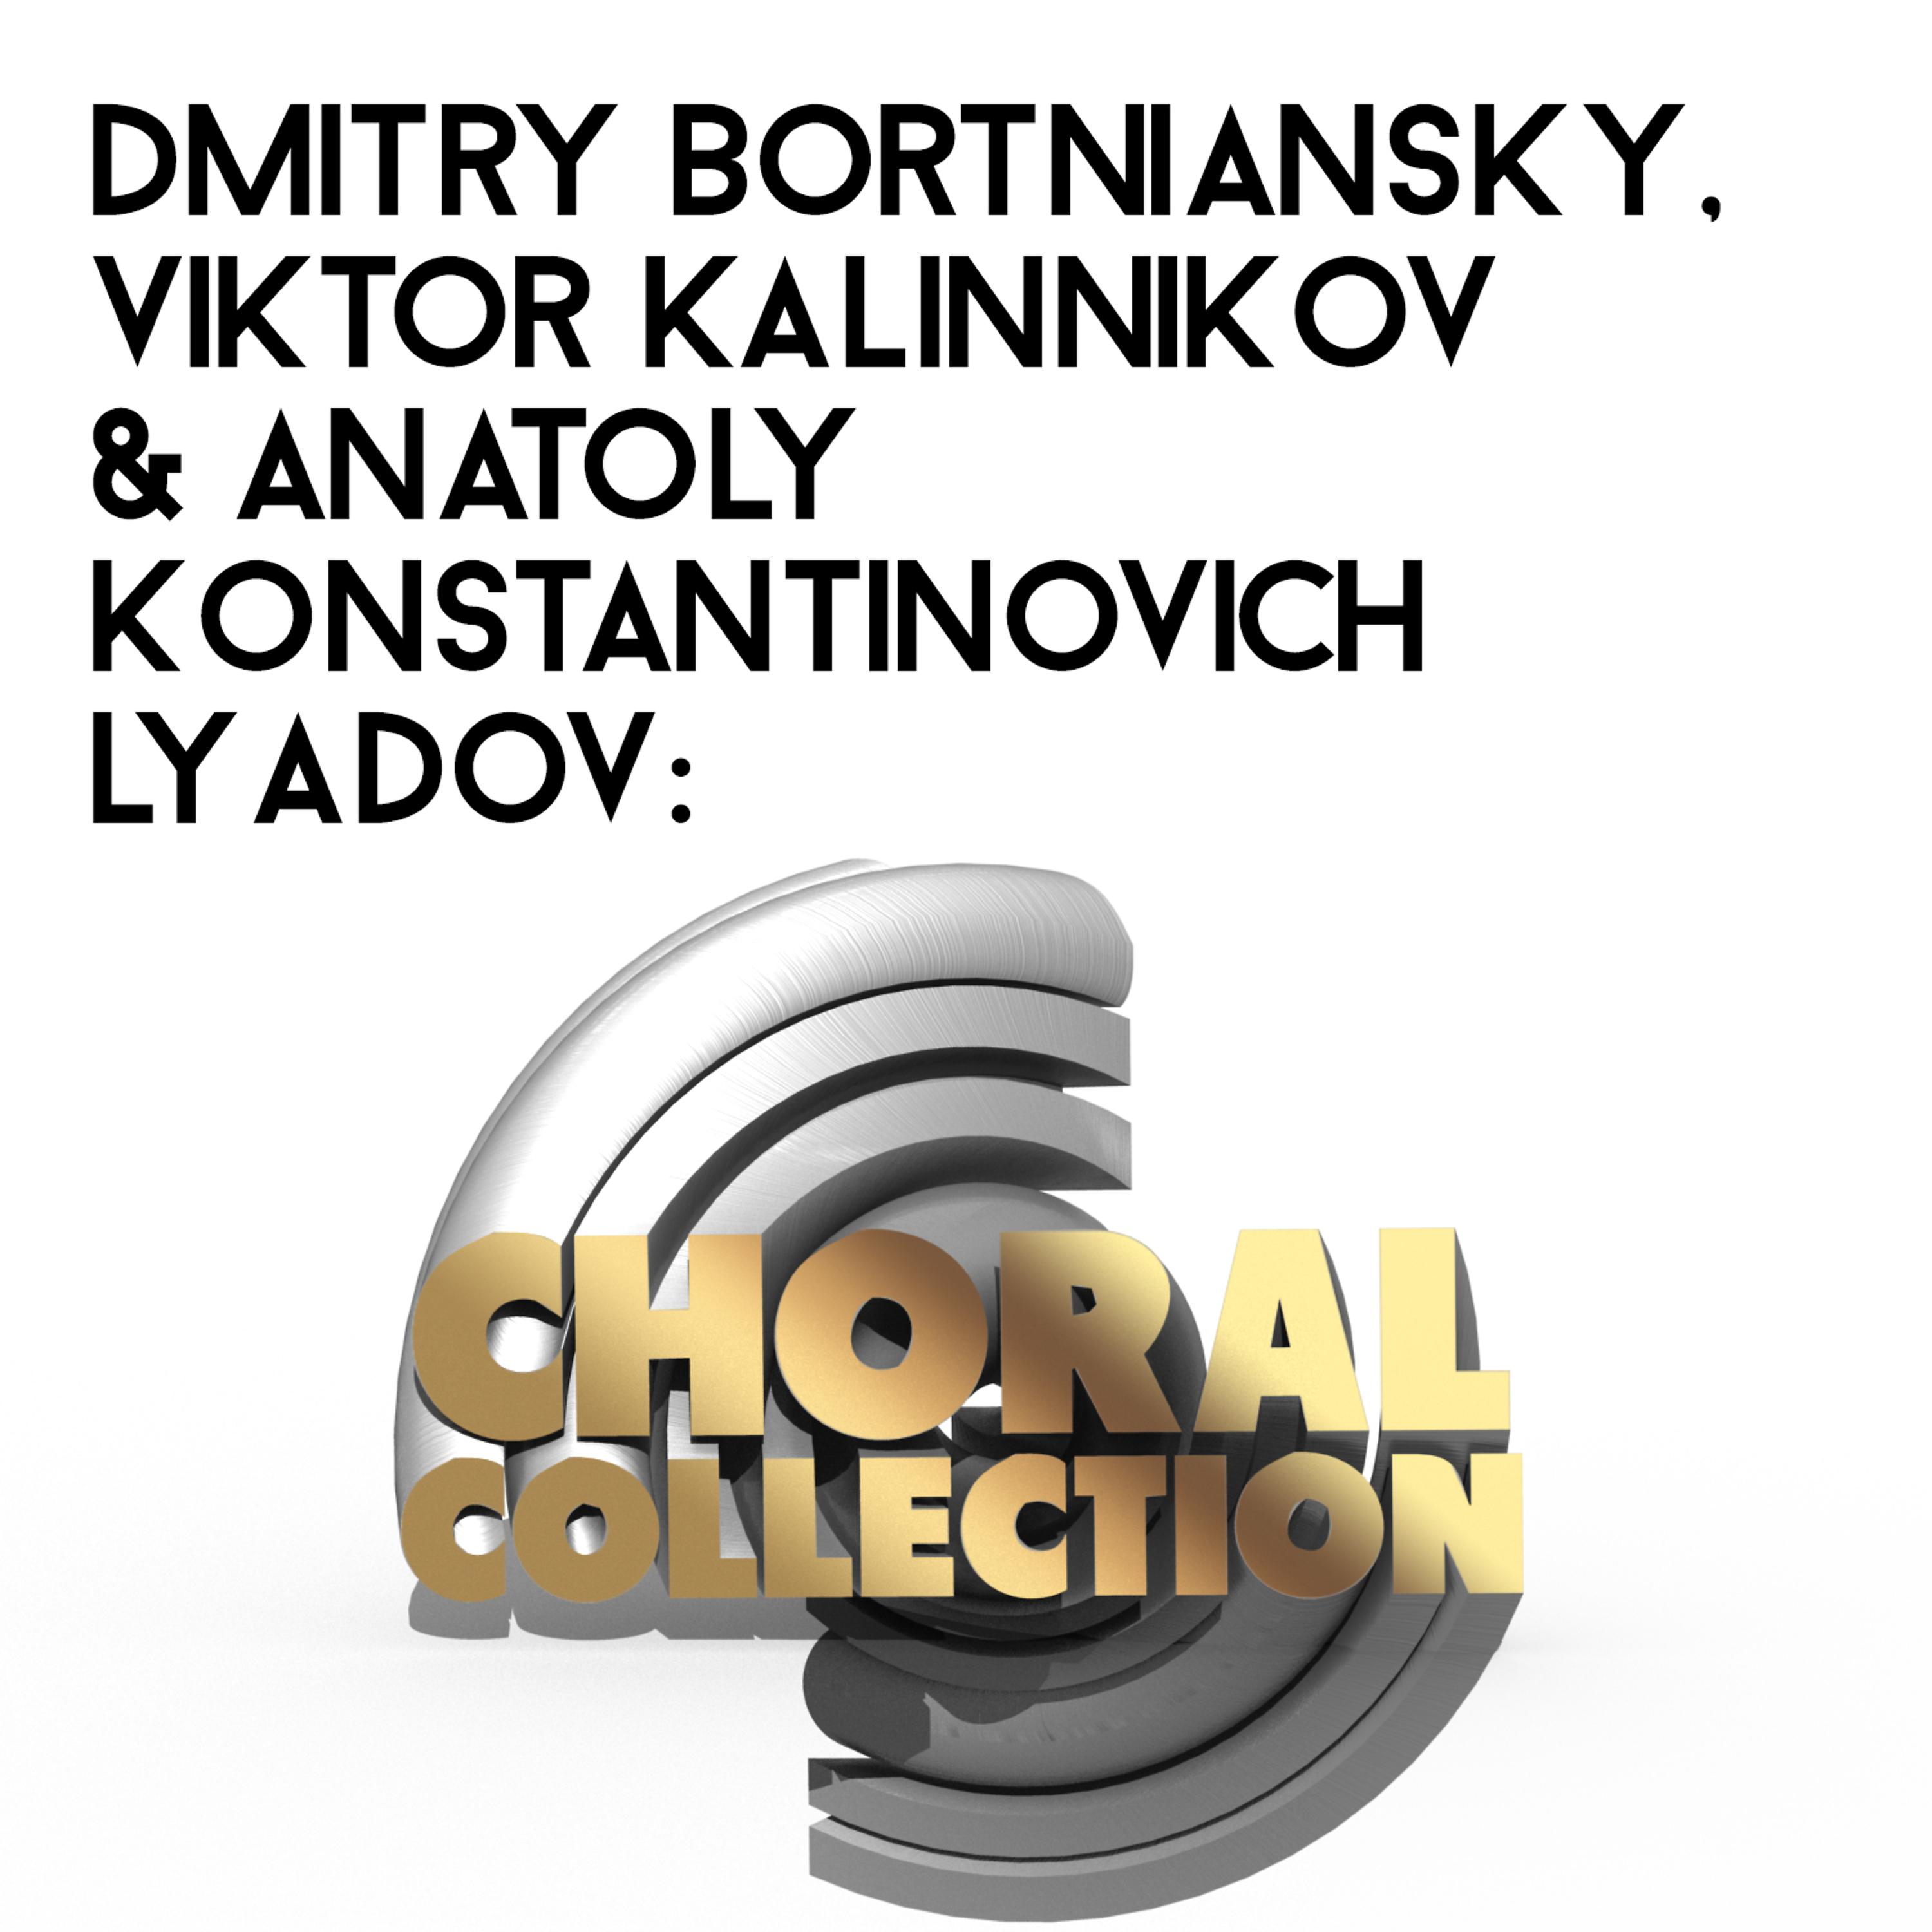 Постер альбома Dmitry Bortniansky, Viktor Kalinnikov & Anatoly Konstantinovich Lyadov: Choral Collection